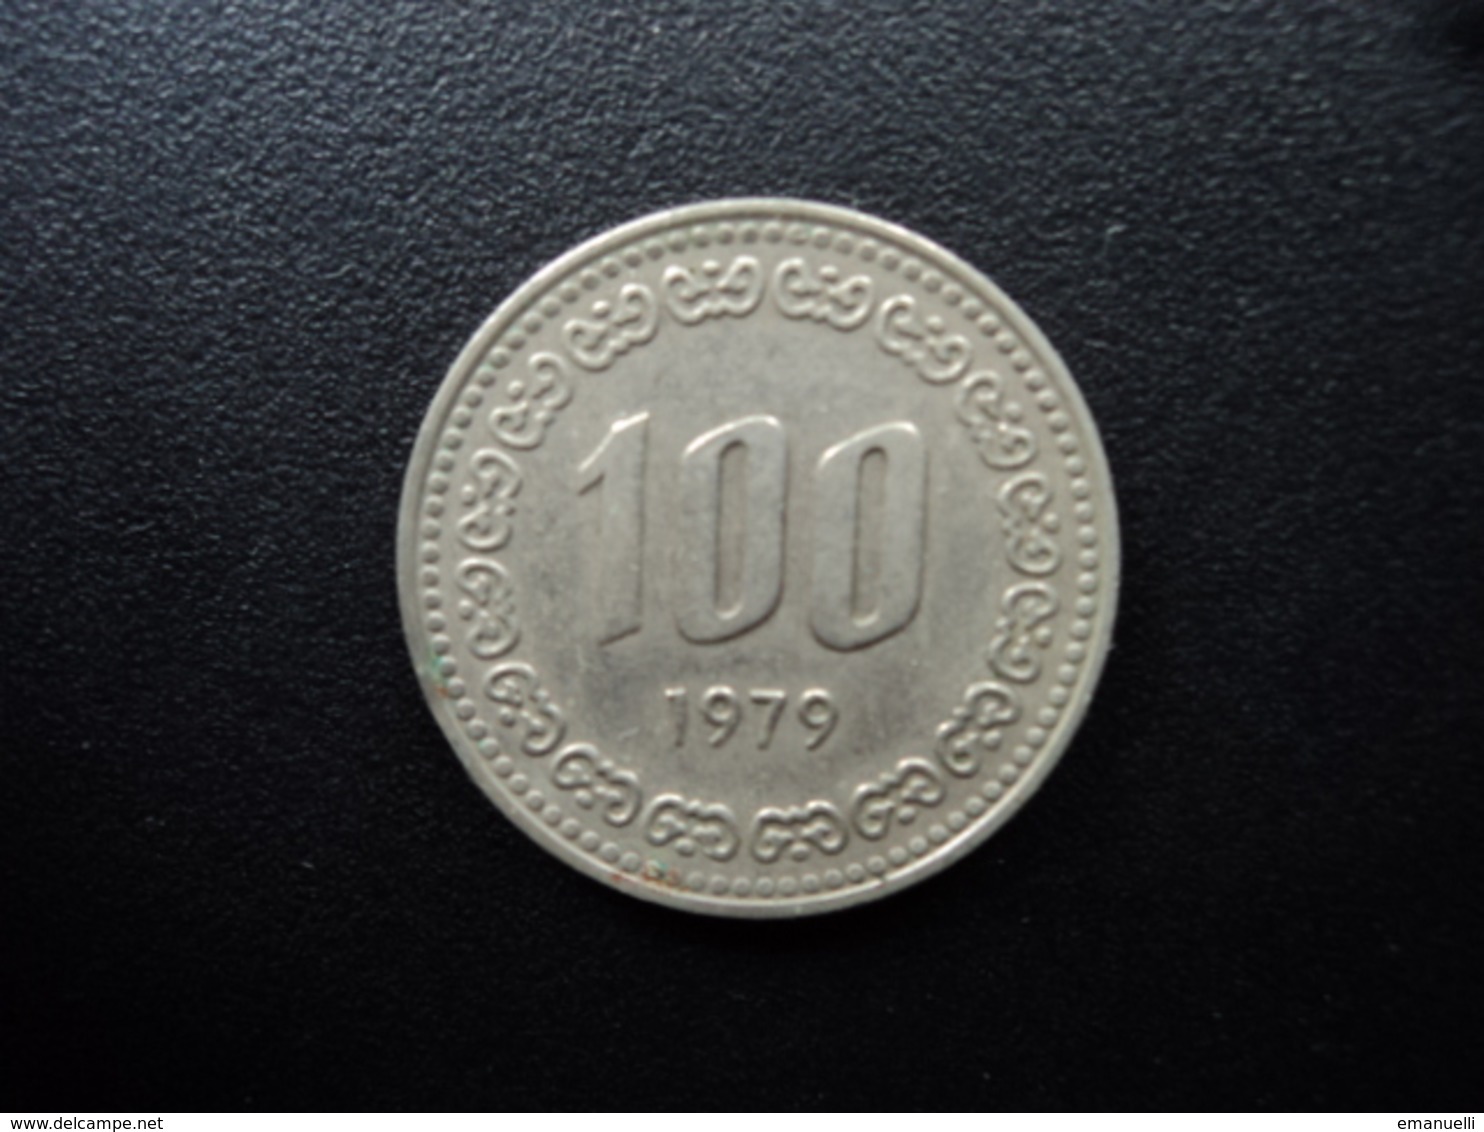 CORÉE DU SUD : 100 WON   1979   KM 9    SUP - Korea, South